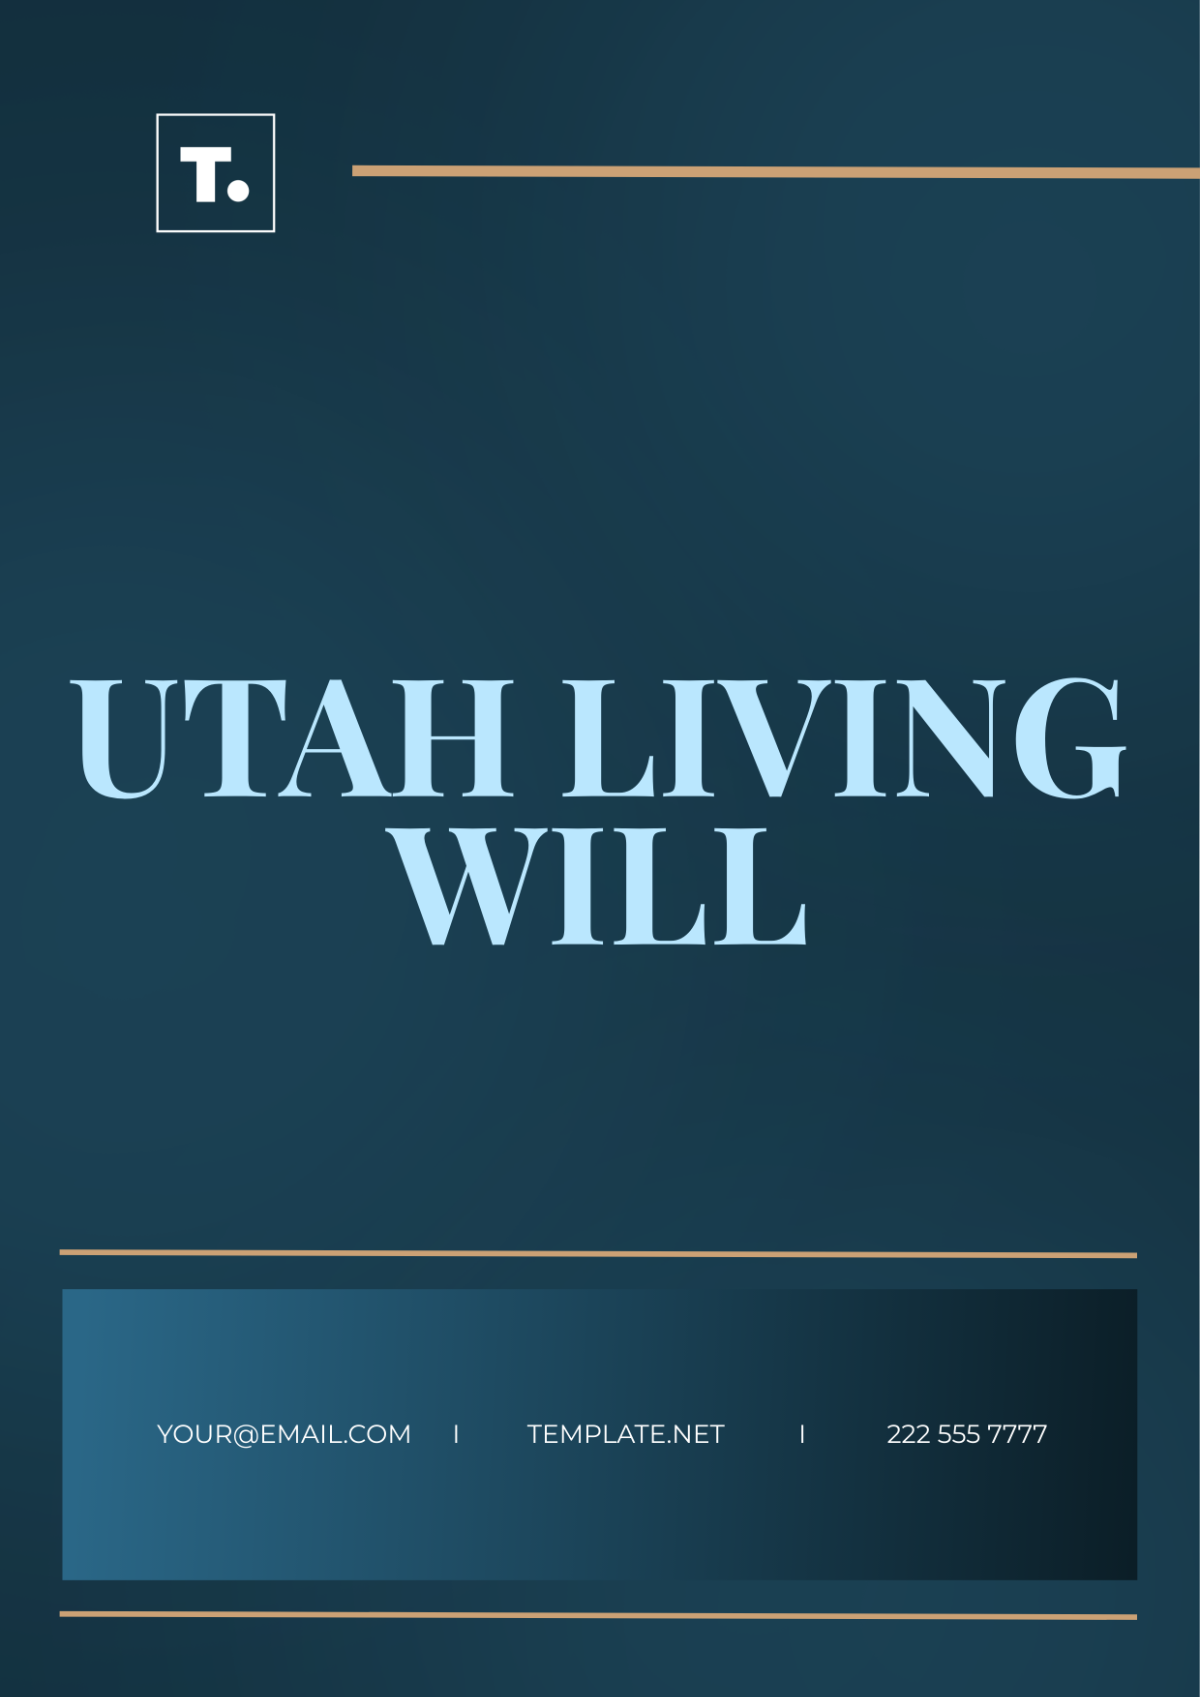 Free Utah Living Will Template